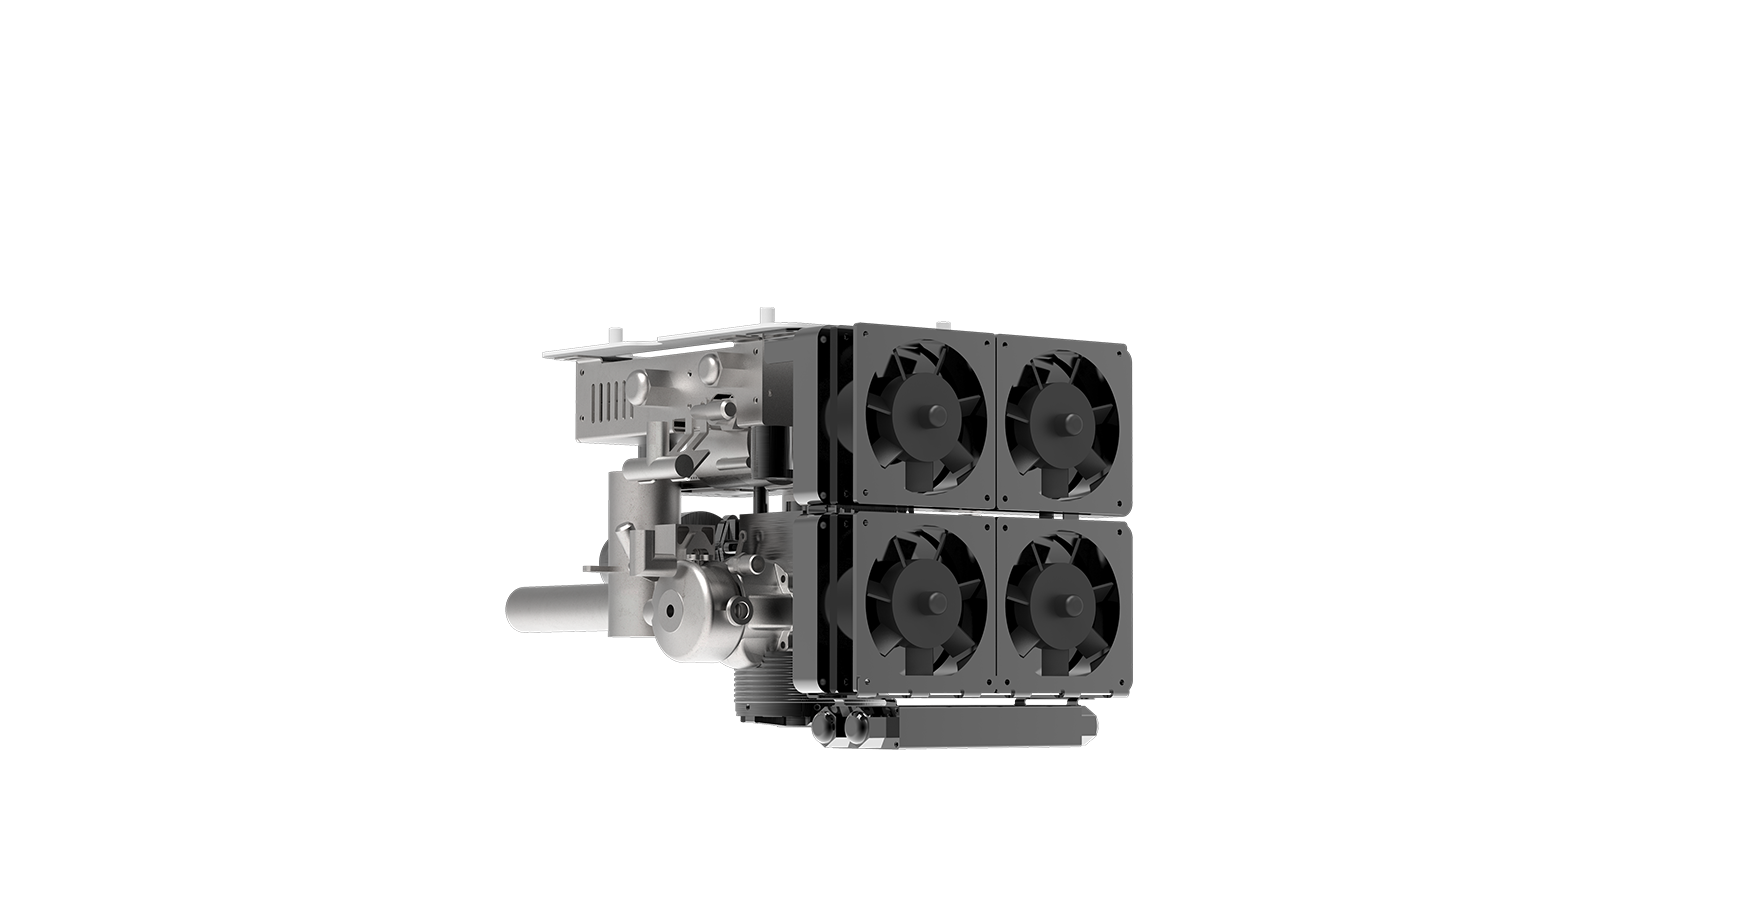 GX-7油电混合动力系统